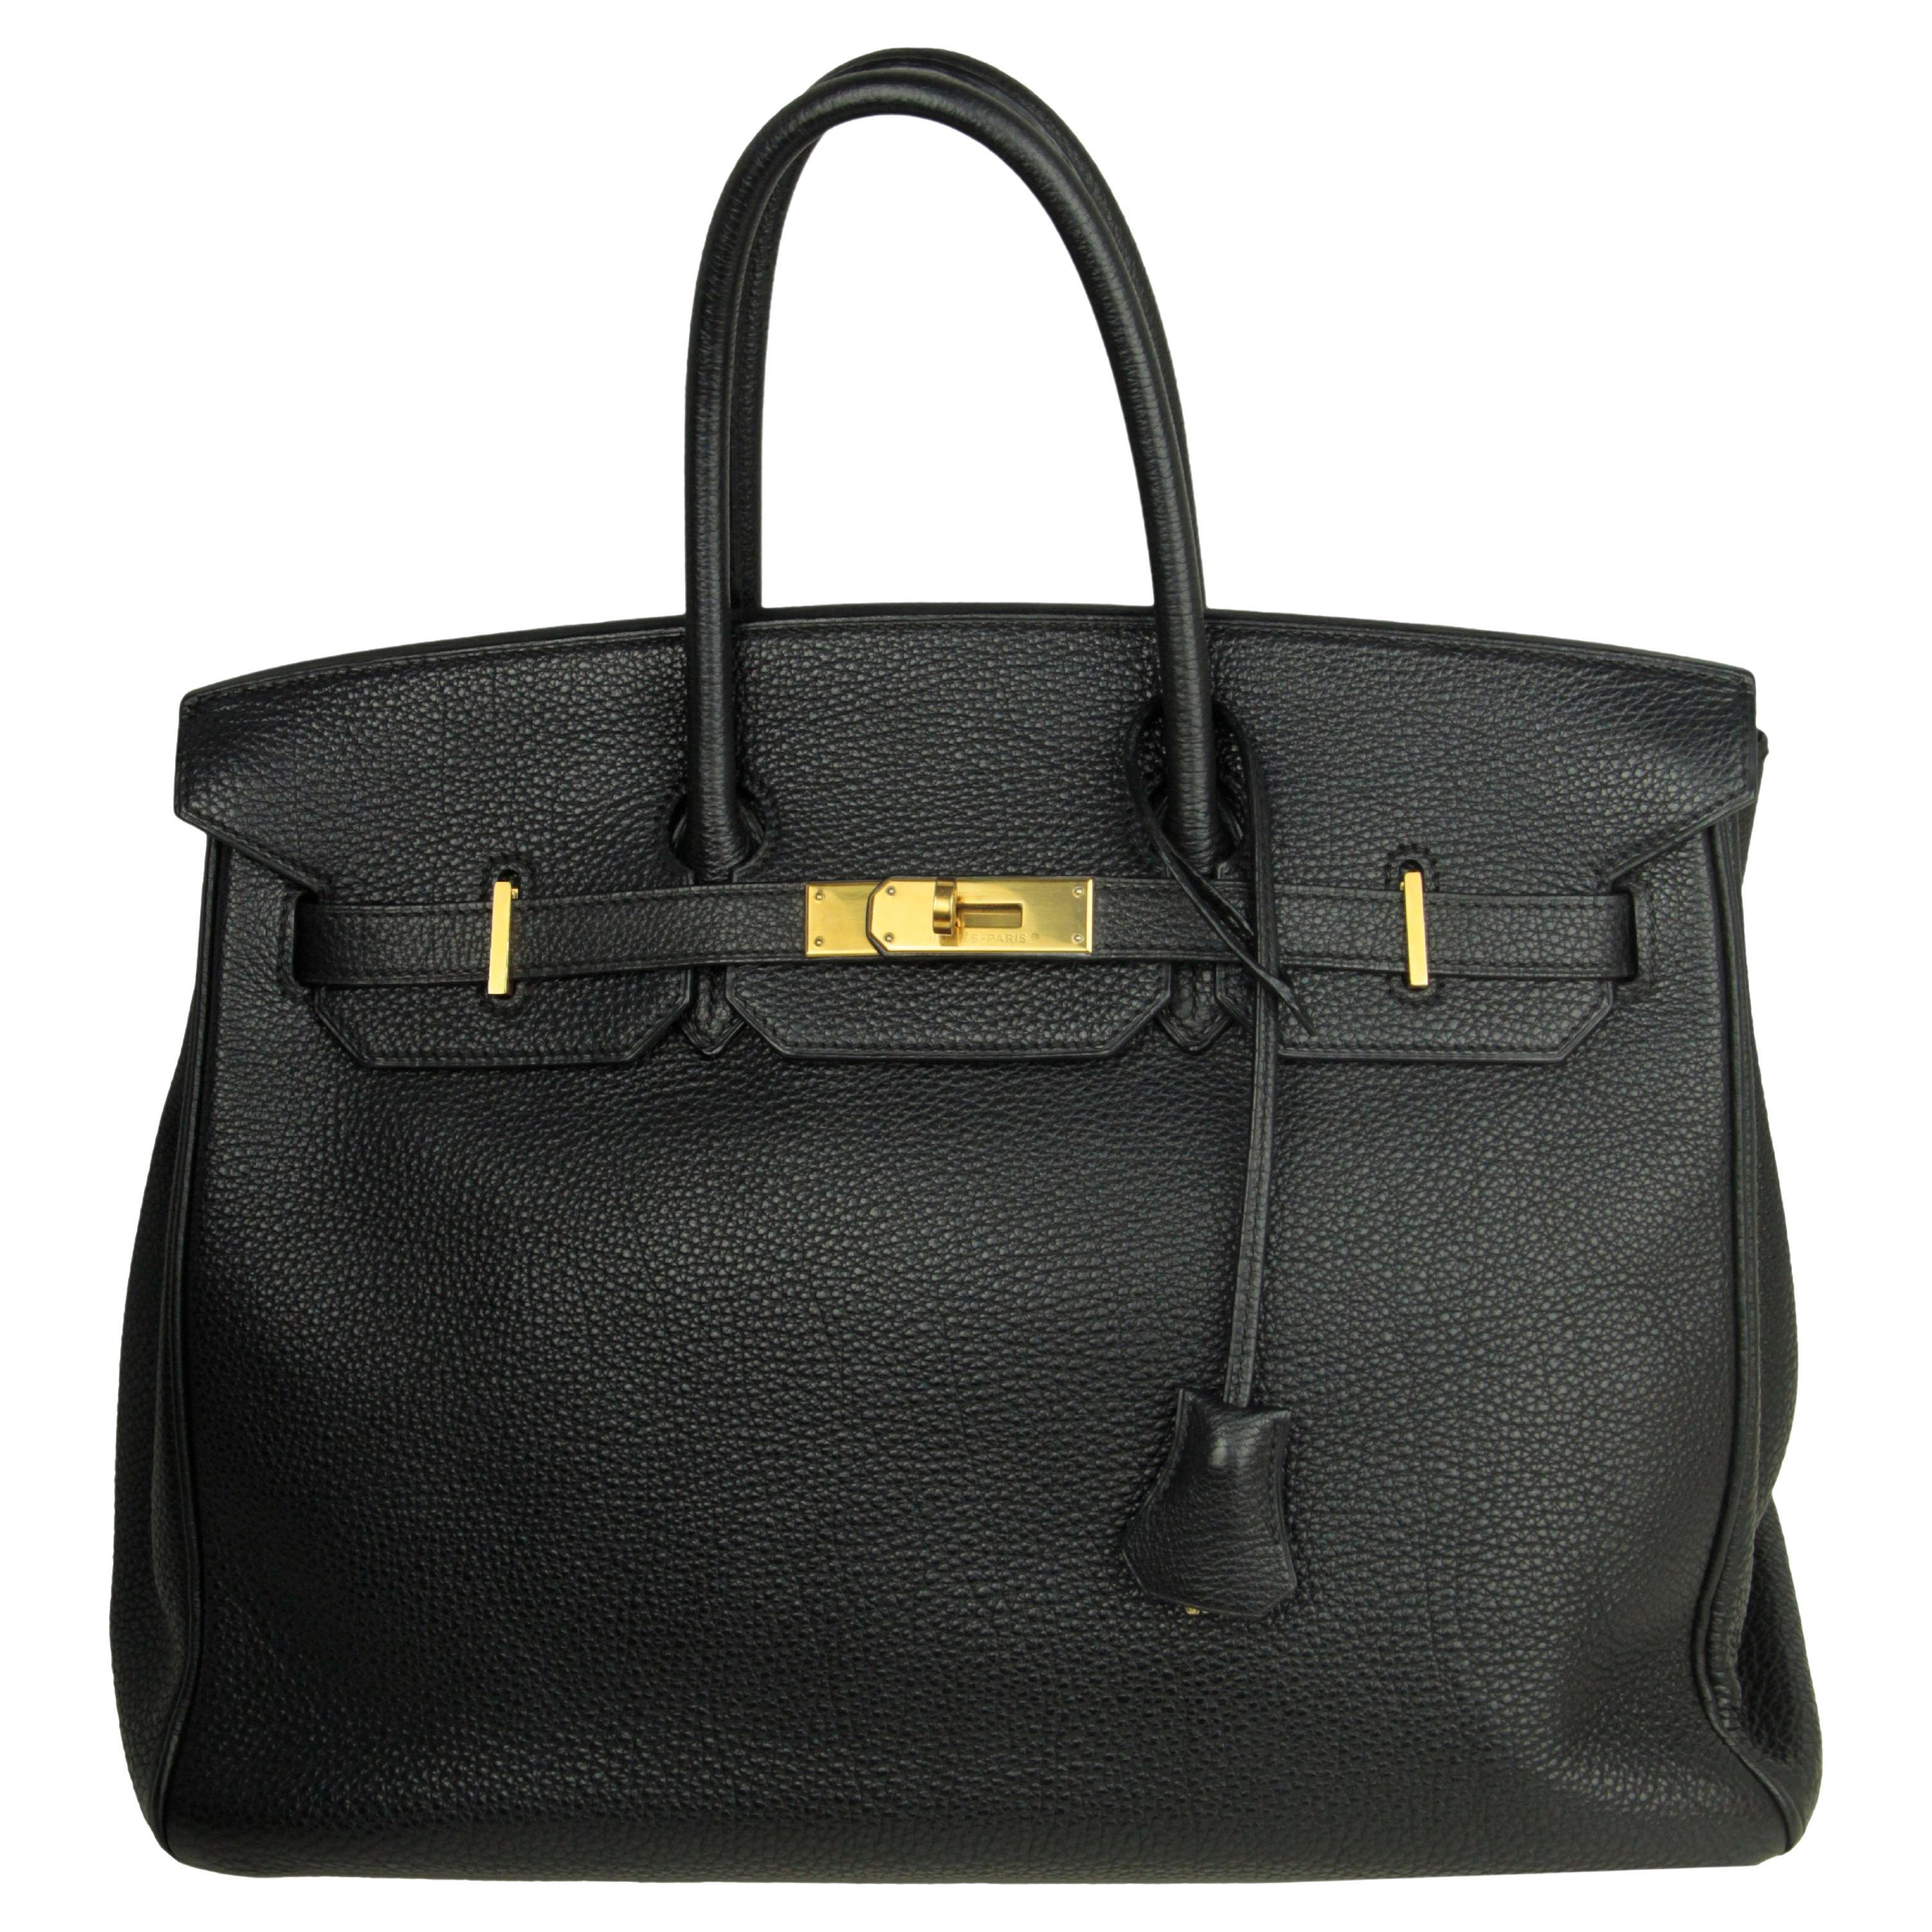 Hermes Black Togo Leather 35cm Birkin Bag GHW